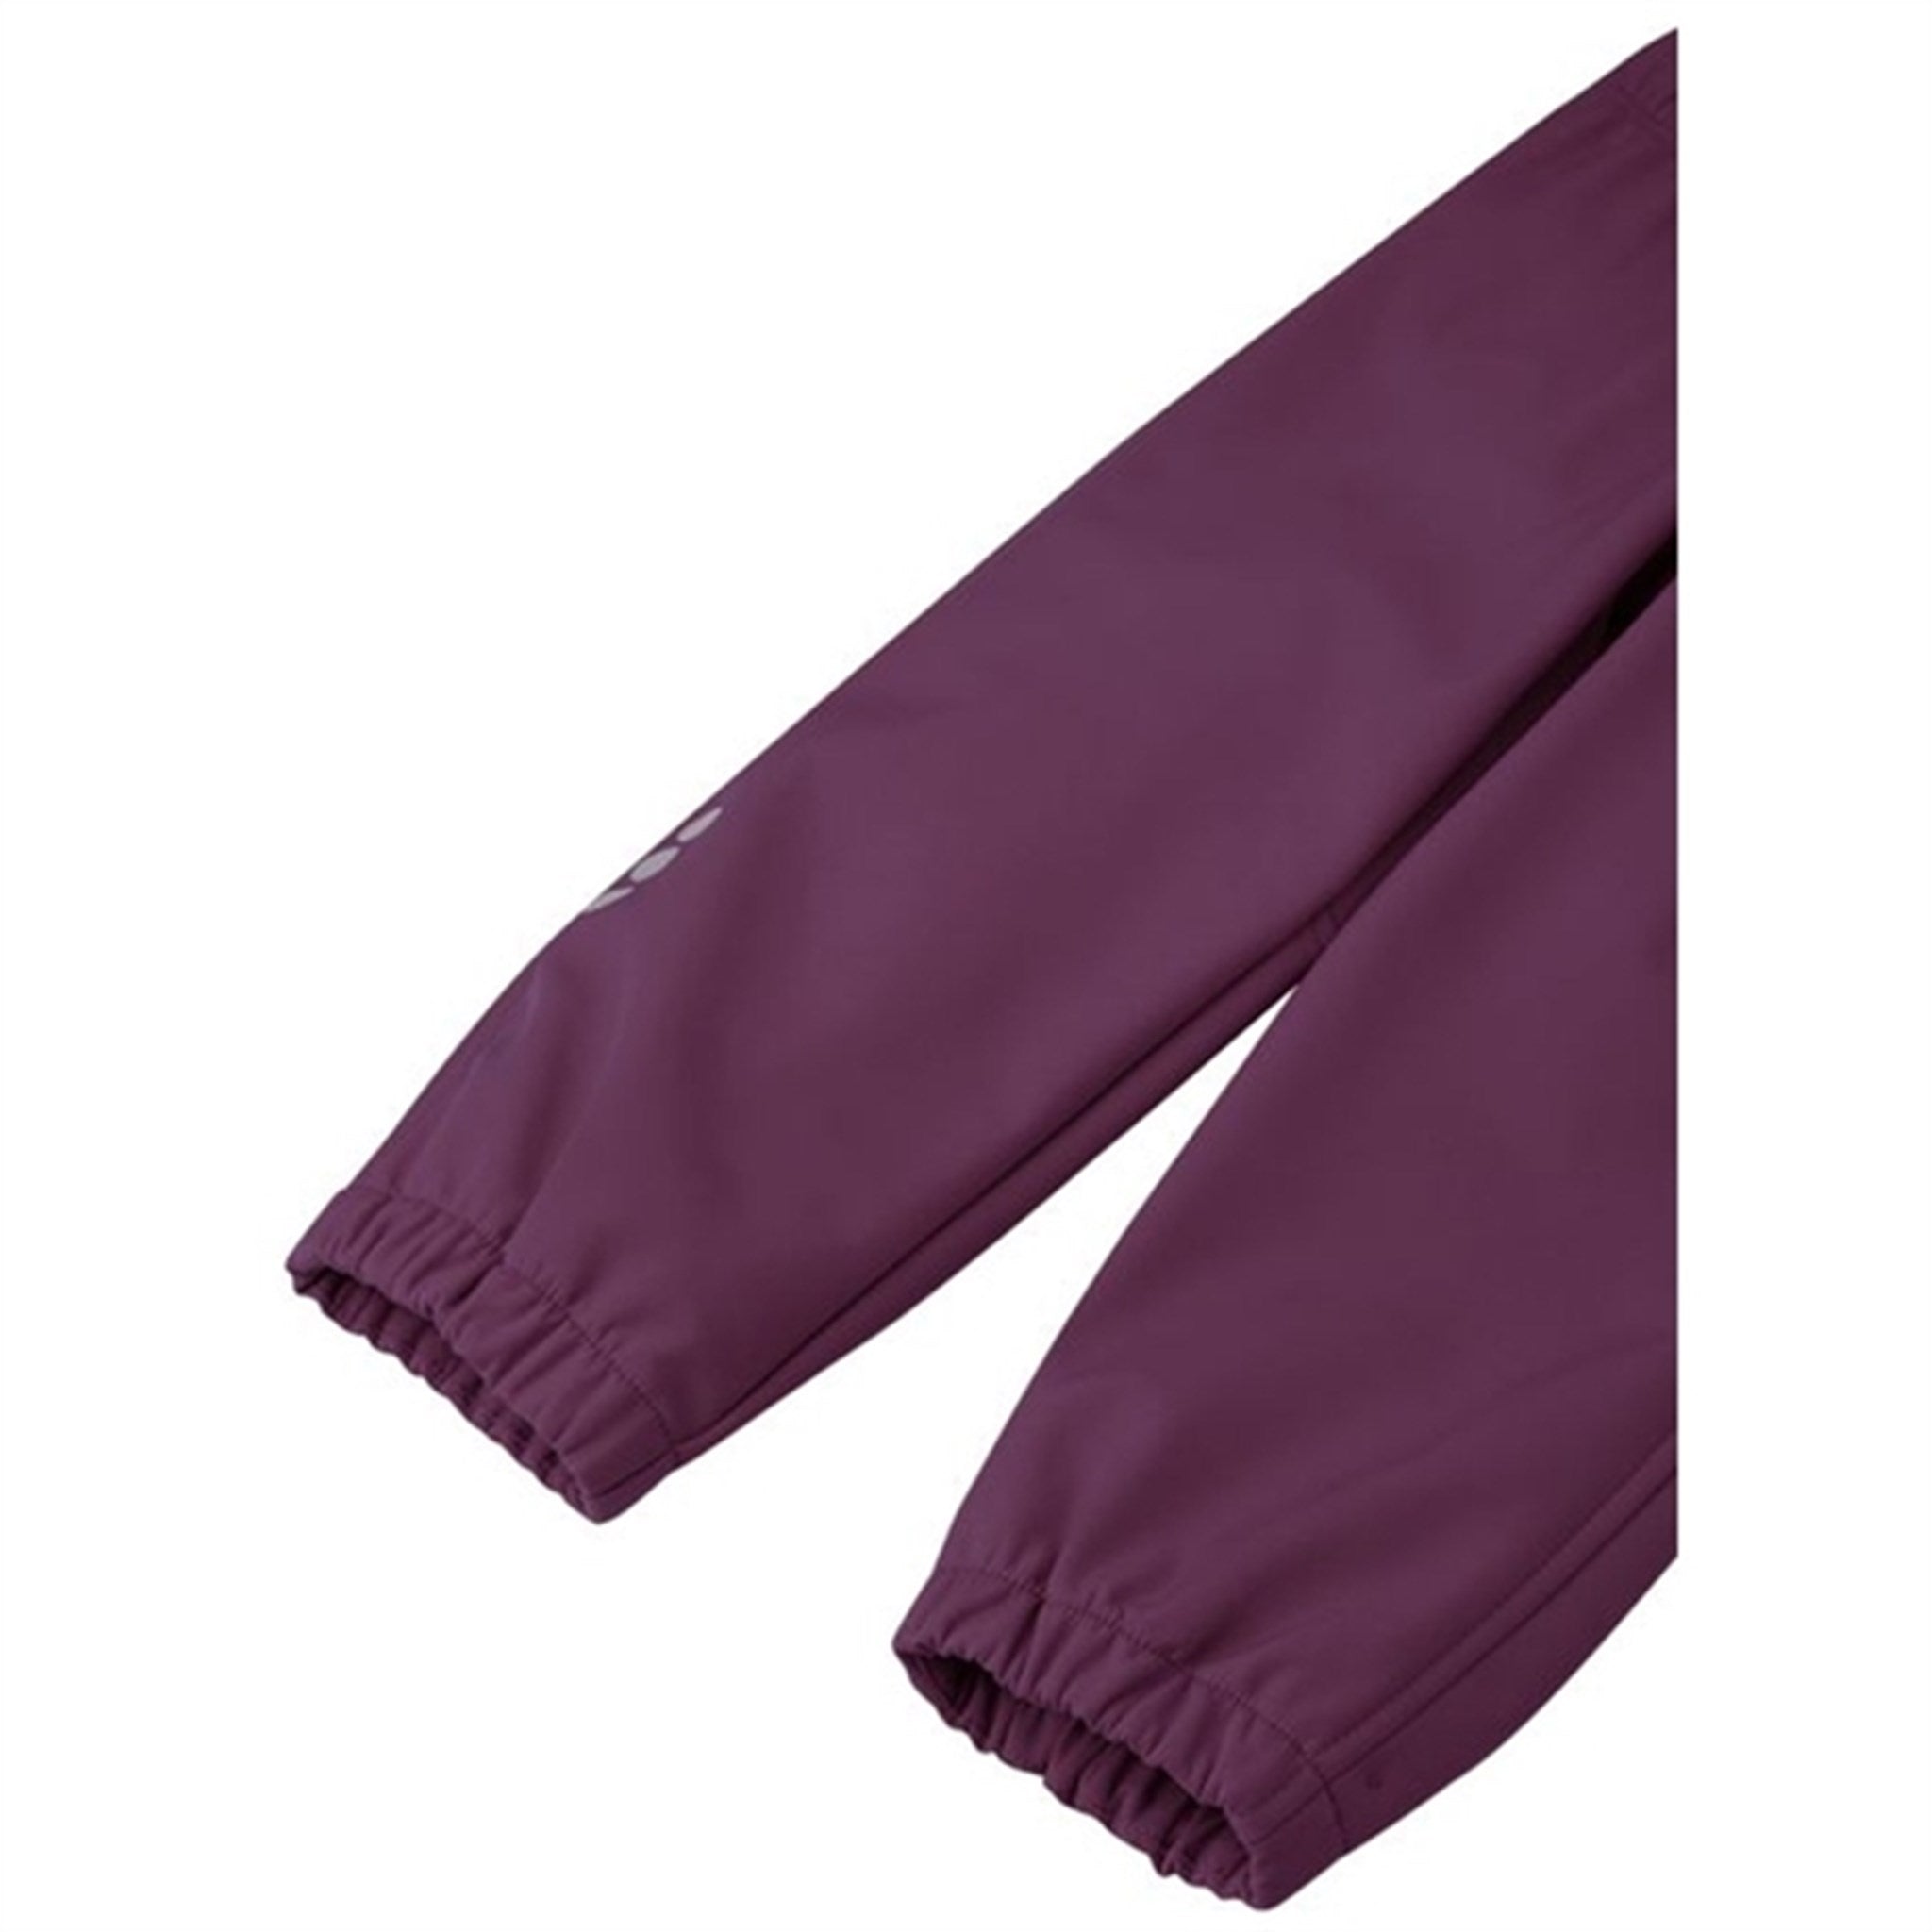 Reima Softshell Pants Oikotie Deep purple 6